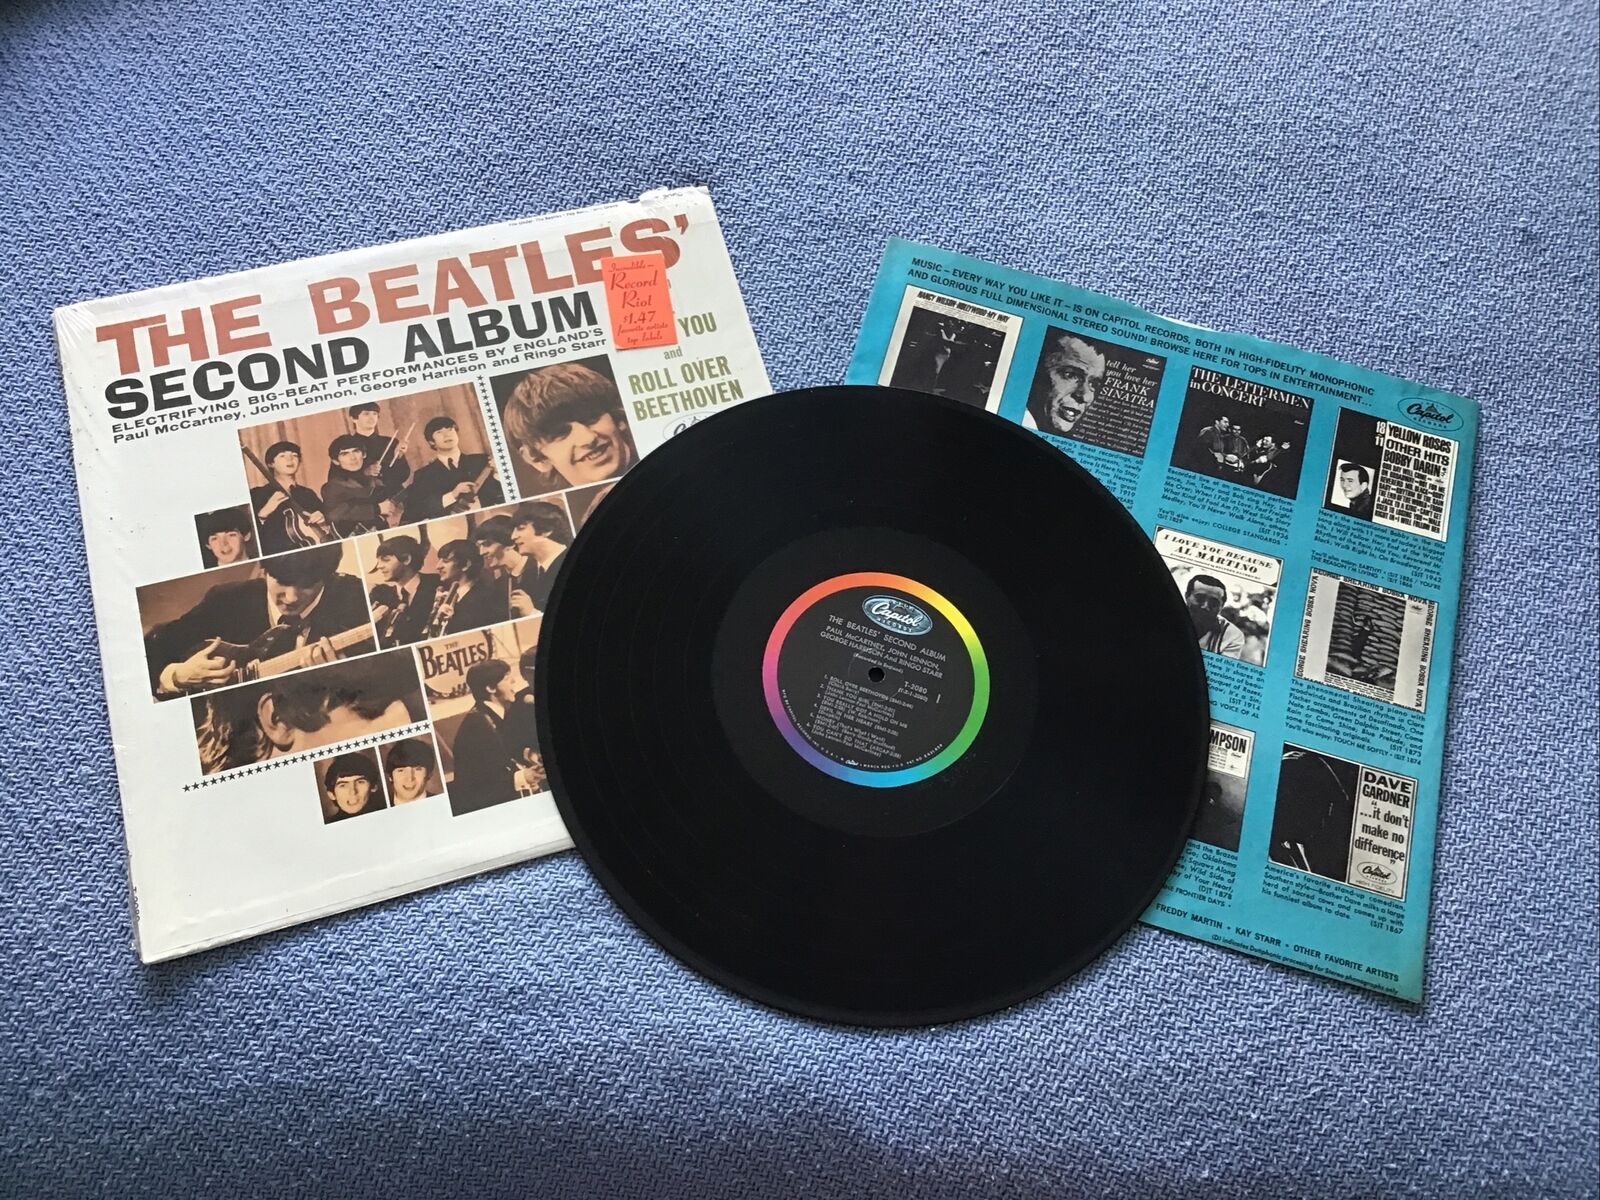 The Beatles “second Album” Original Pressing Lp